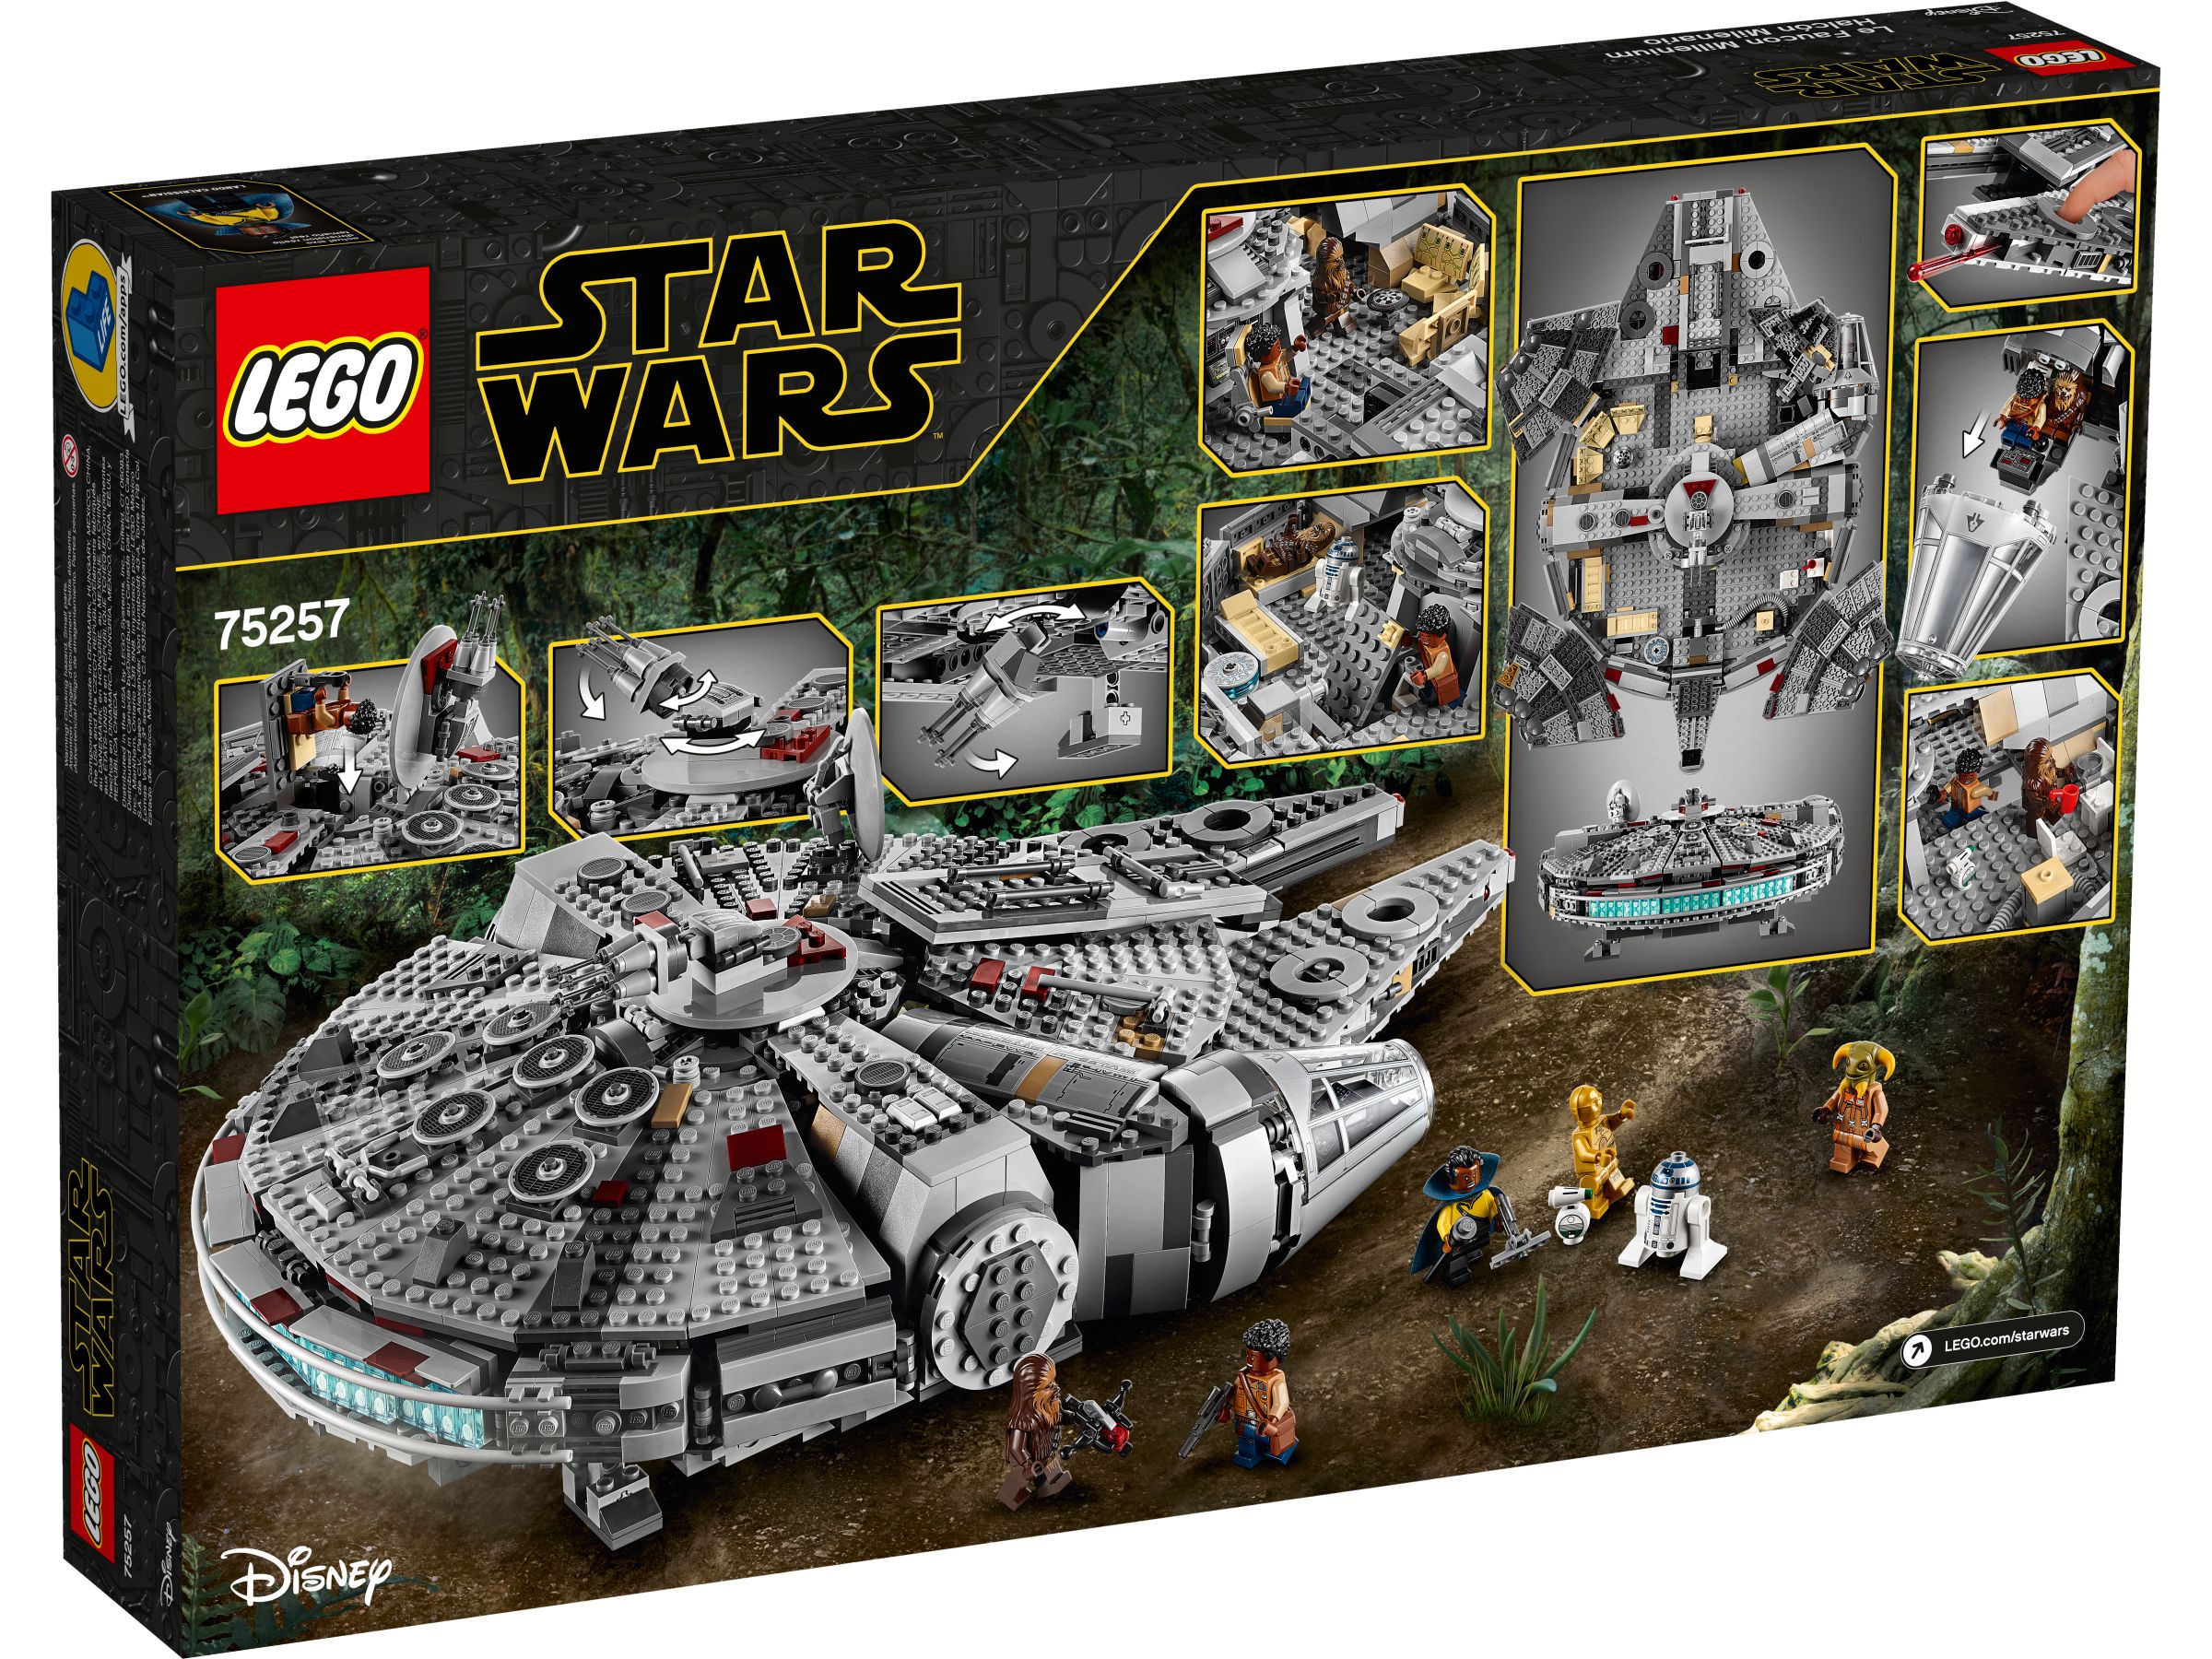 LEGO Star Wars 75257 Millennium Falcon™ LEGO_75257_alt4.jpg